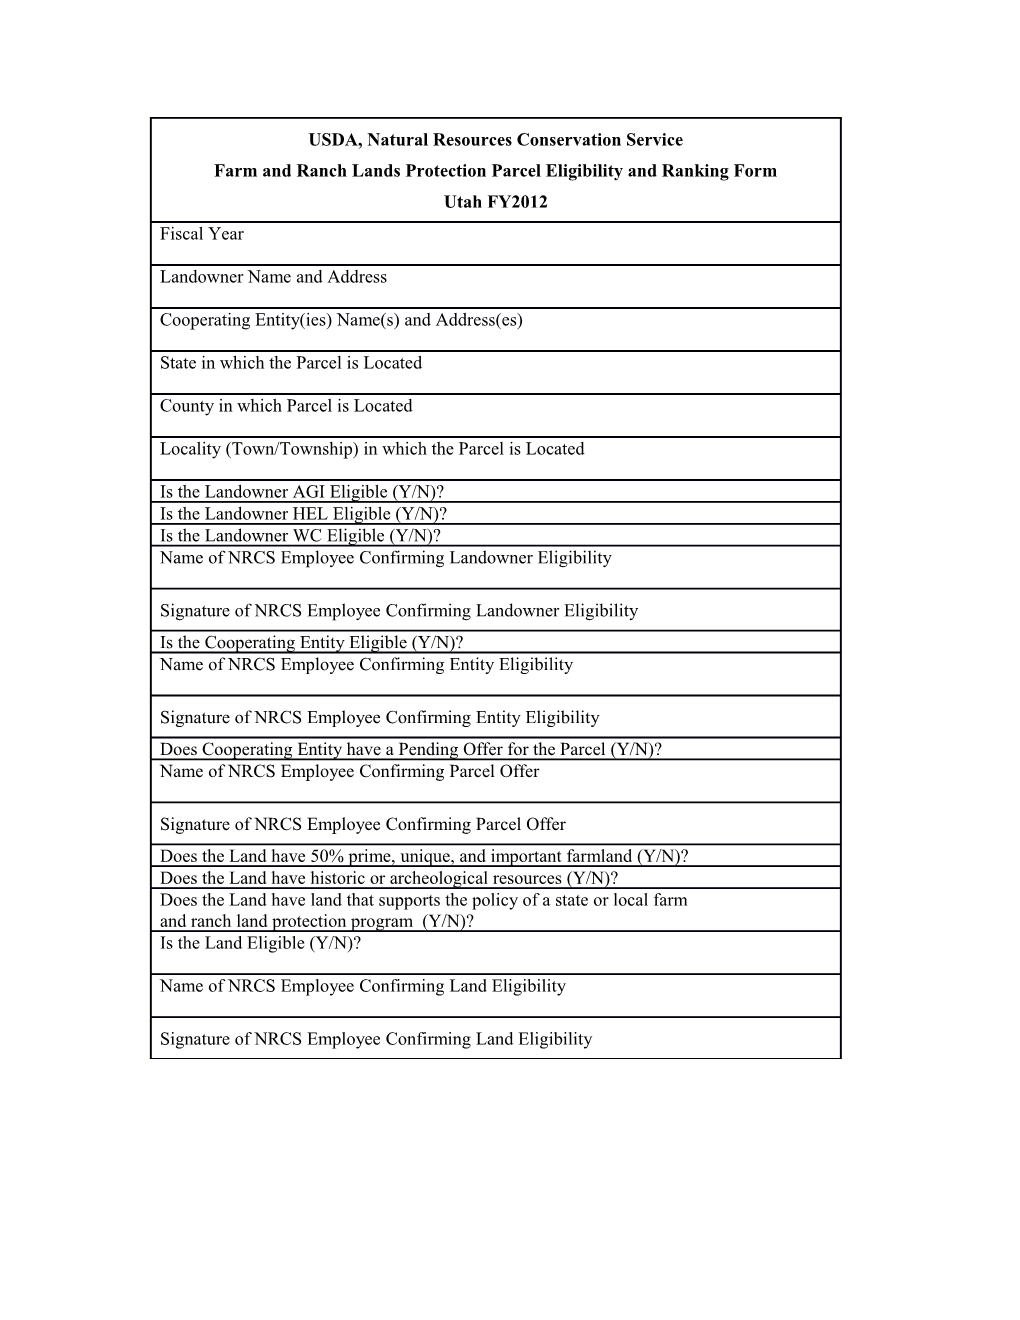 FFP Ranking Criteria for Utah FY 2002